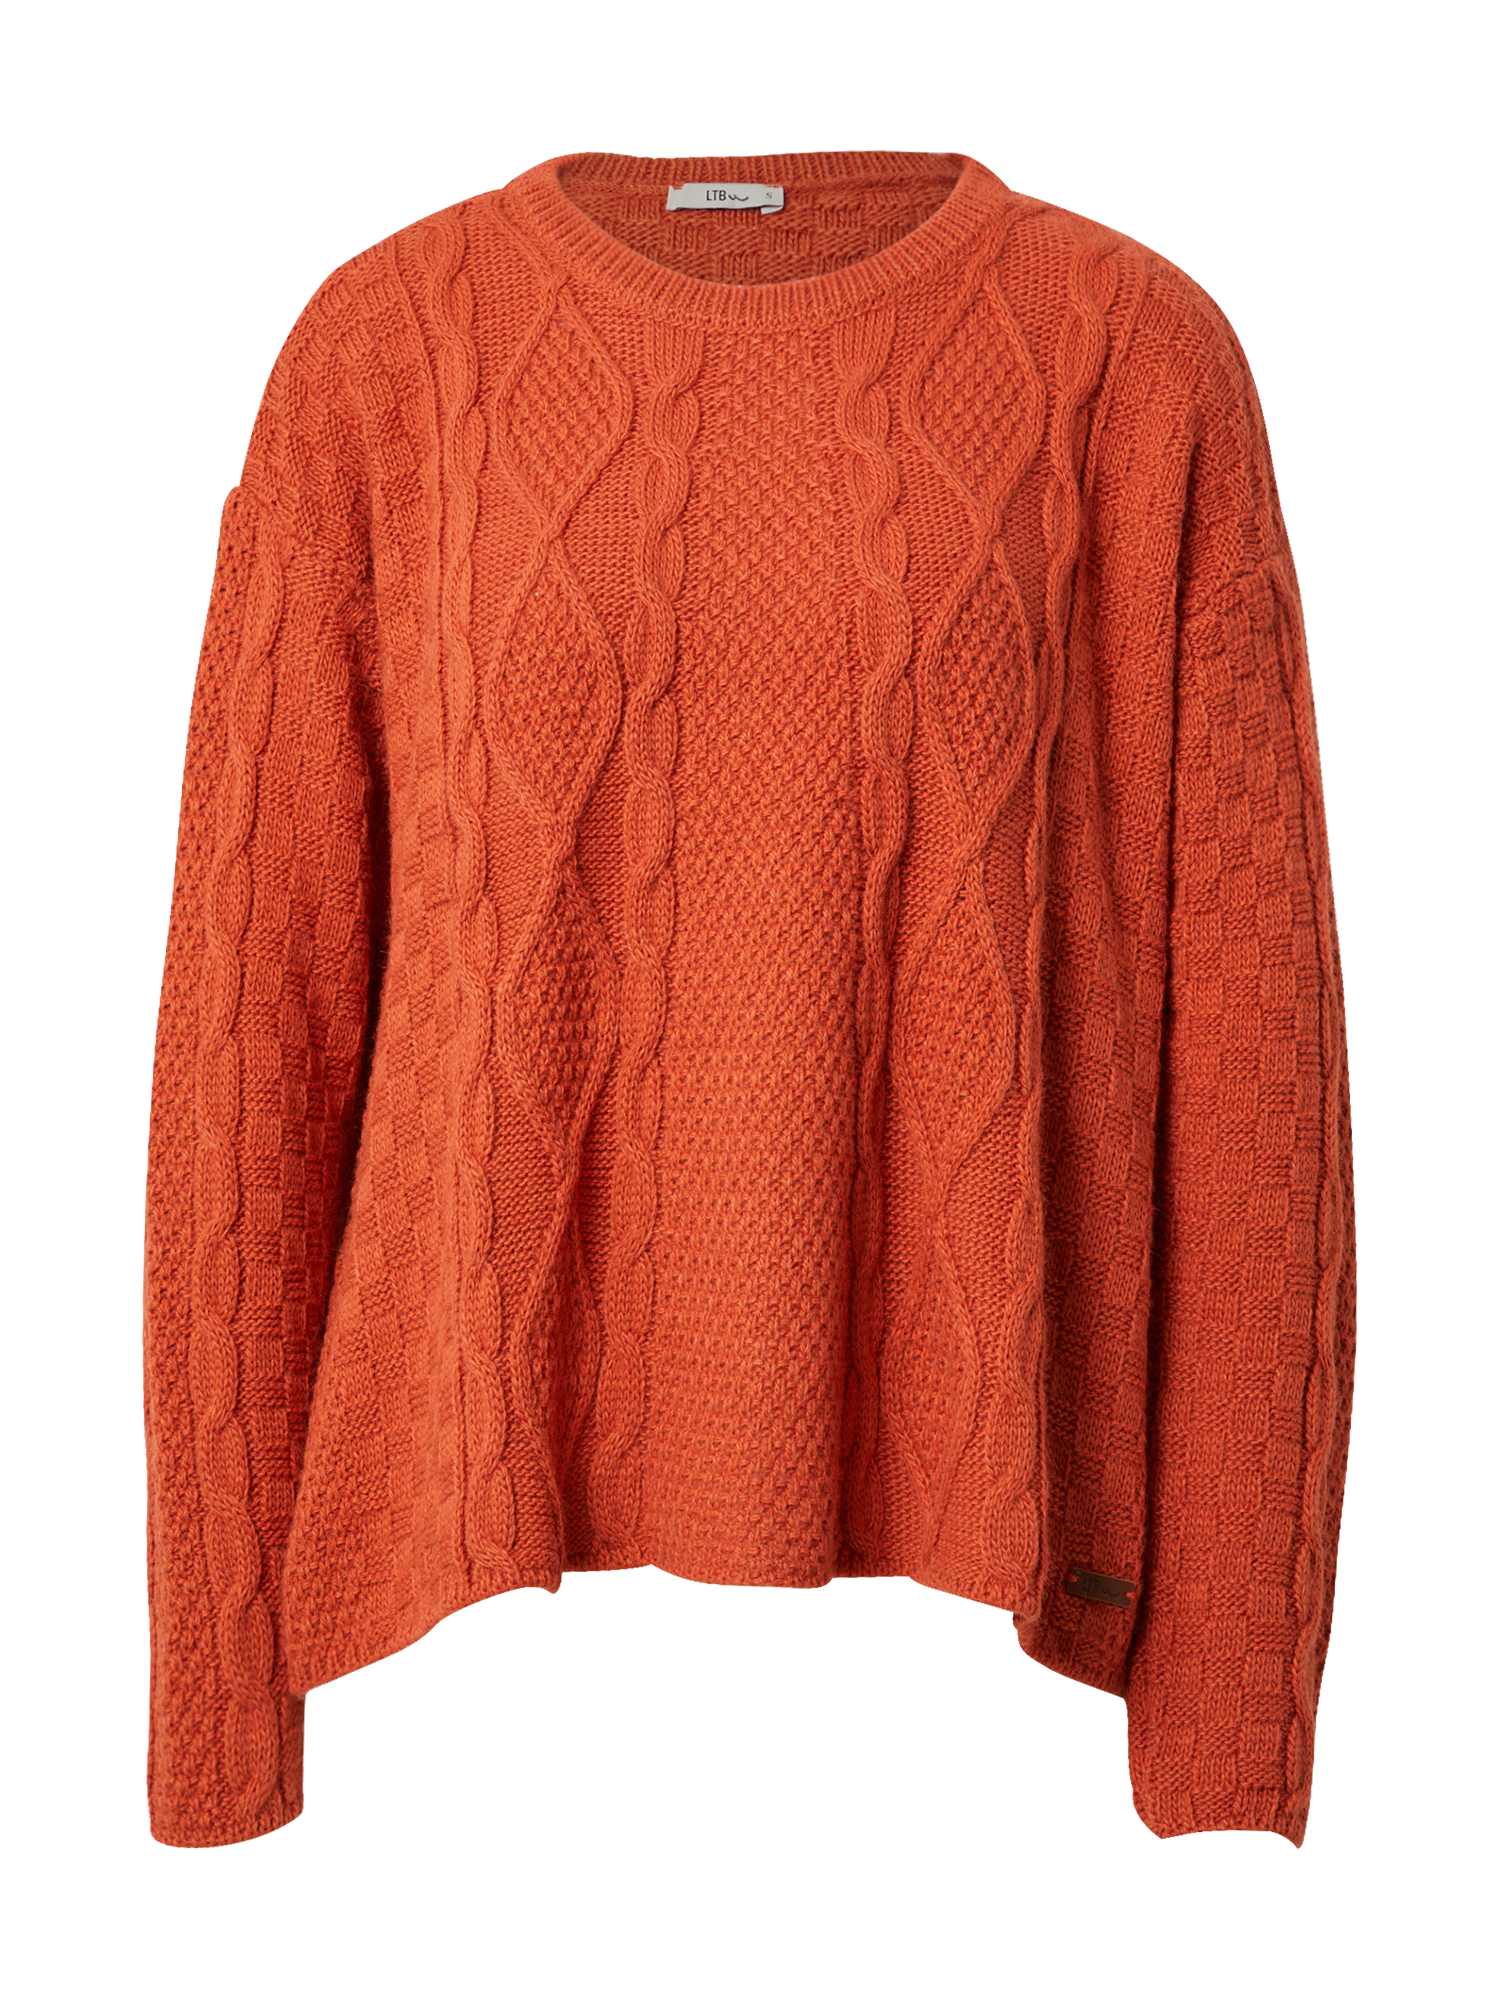 Swetry & dzianina Odzież LTB Sweter ZAFACO w kolorze Pomarańczowym 